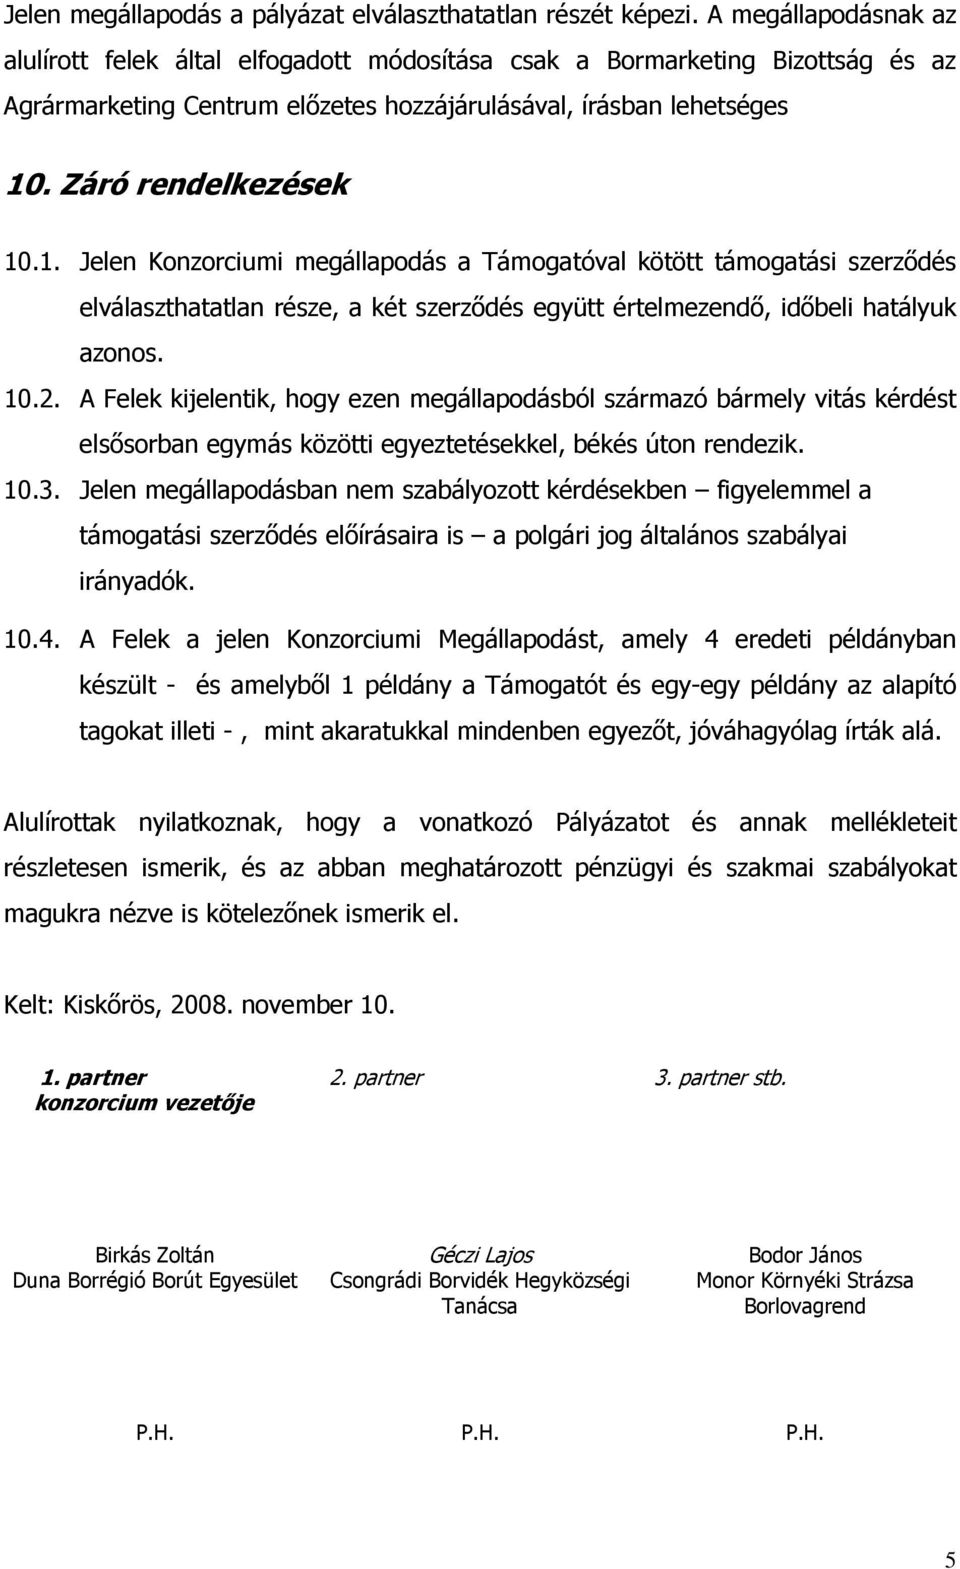 . Záró rendelkezések 10.1. Jelen Konzorciumi megállapodás a Támogatóval kötött támogatási szerzıdés elválaszthatatlan része, a két szerzıdés együtt értelmezendı, idıbeli hatályuk azonos. 10.2.